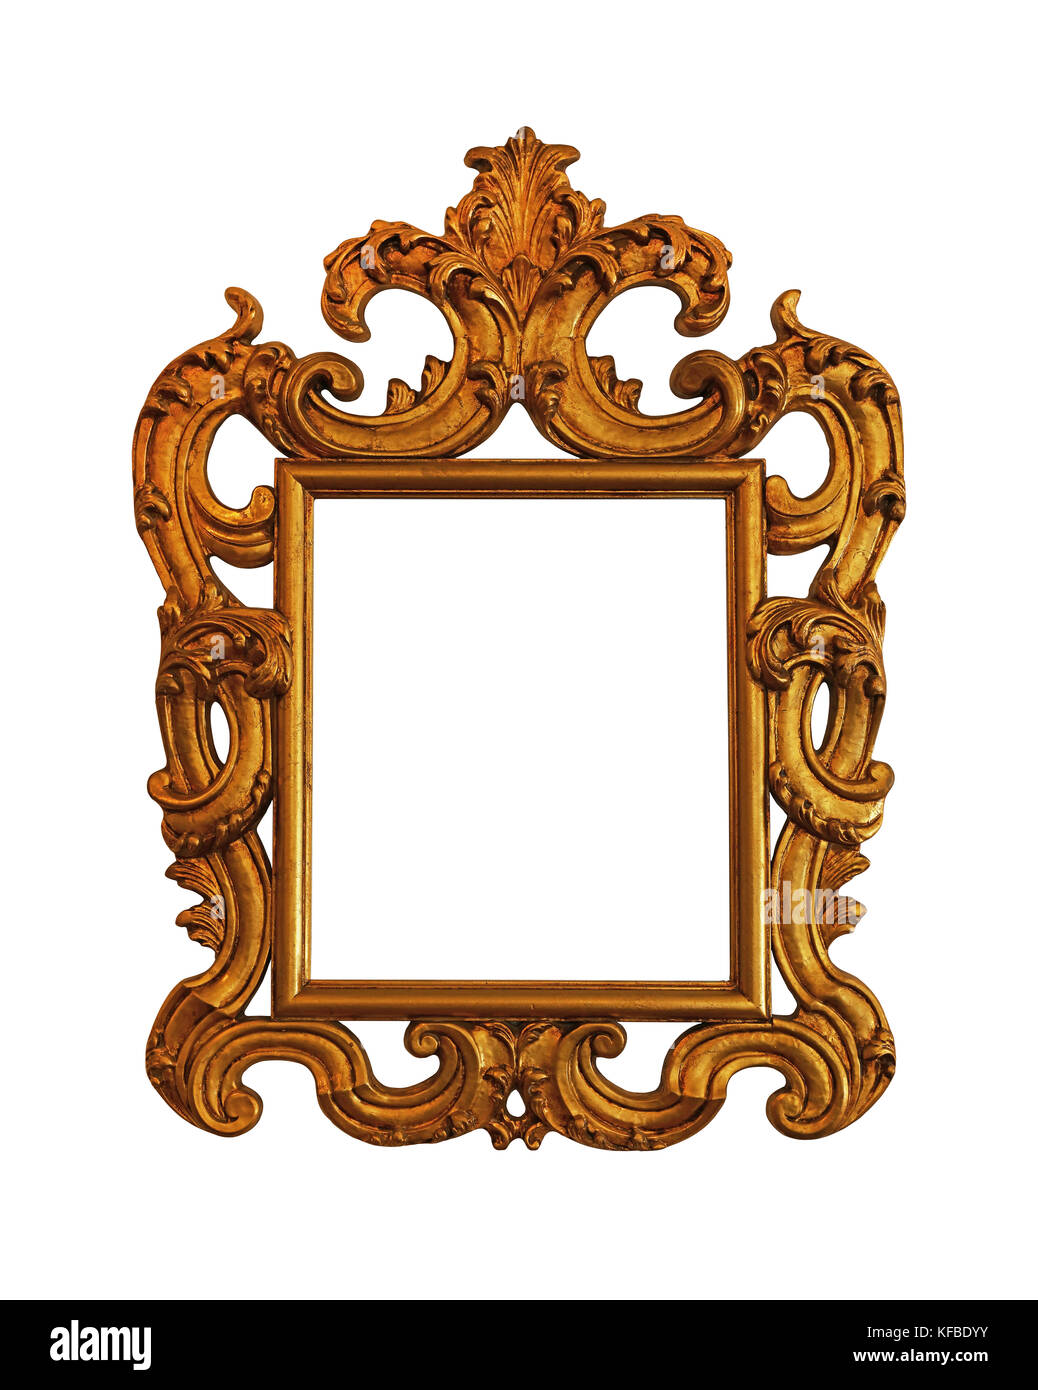 Vecchio antichi decorati in stile barocco classico in legno dipinto di golden telaio rettangolare per immagini, foto o a specchio, isolati su sfondo bianco, close up Foto Stock